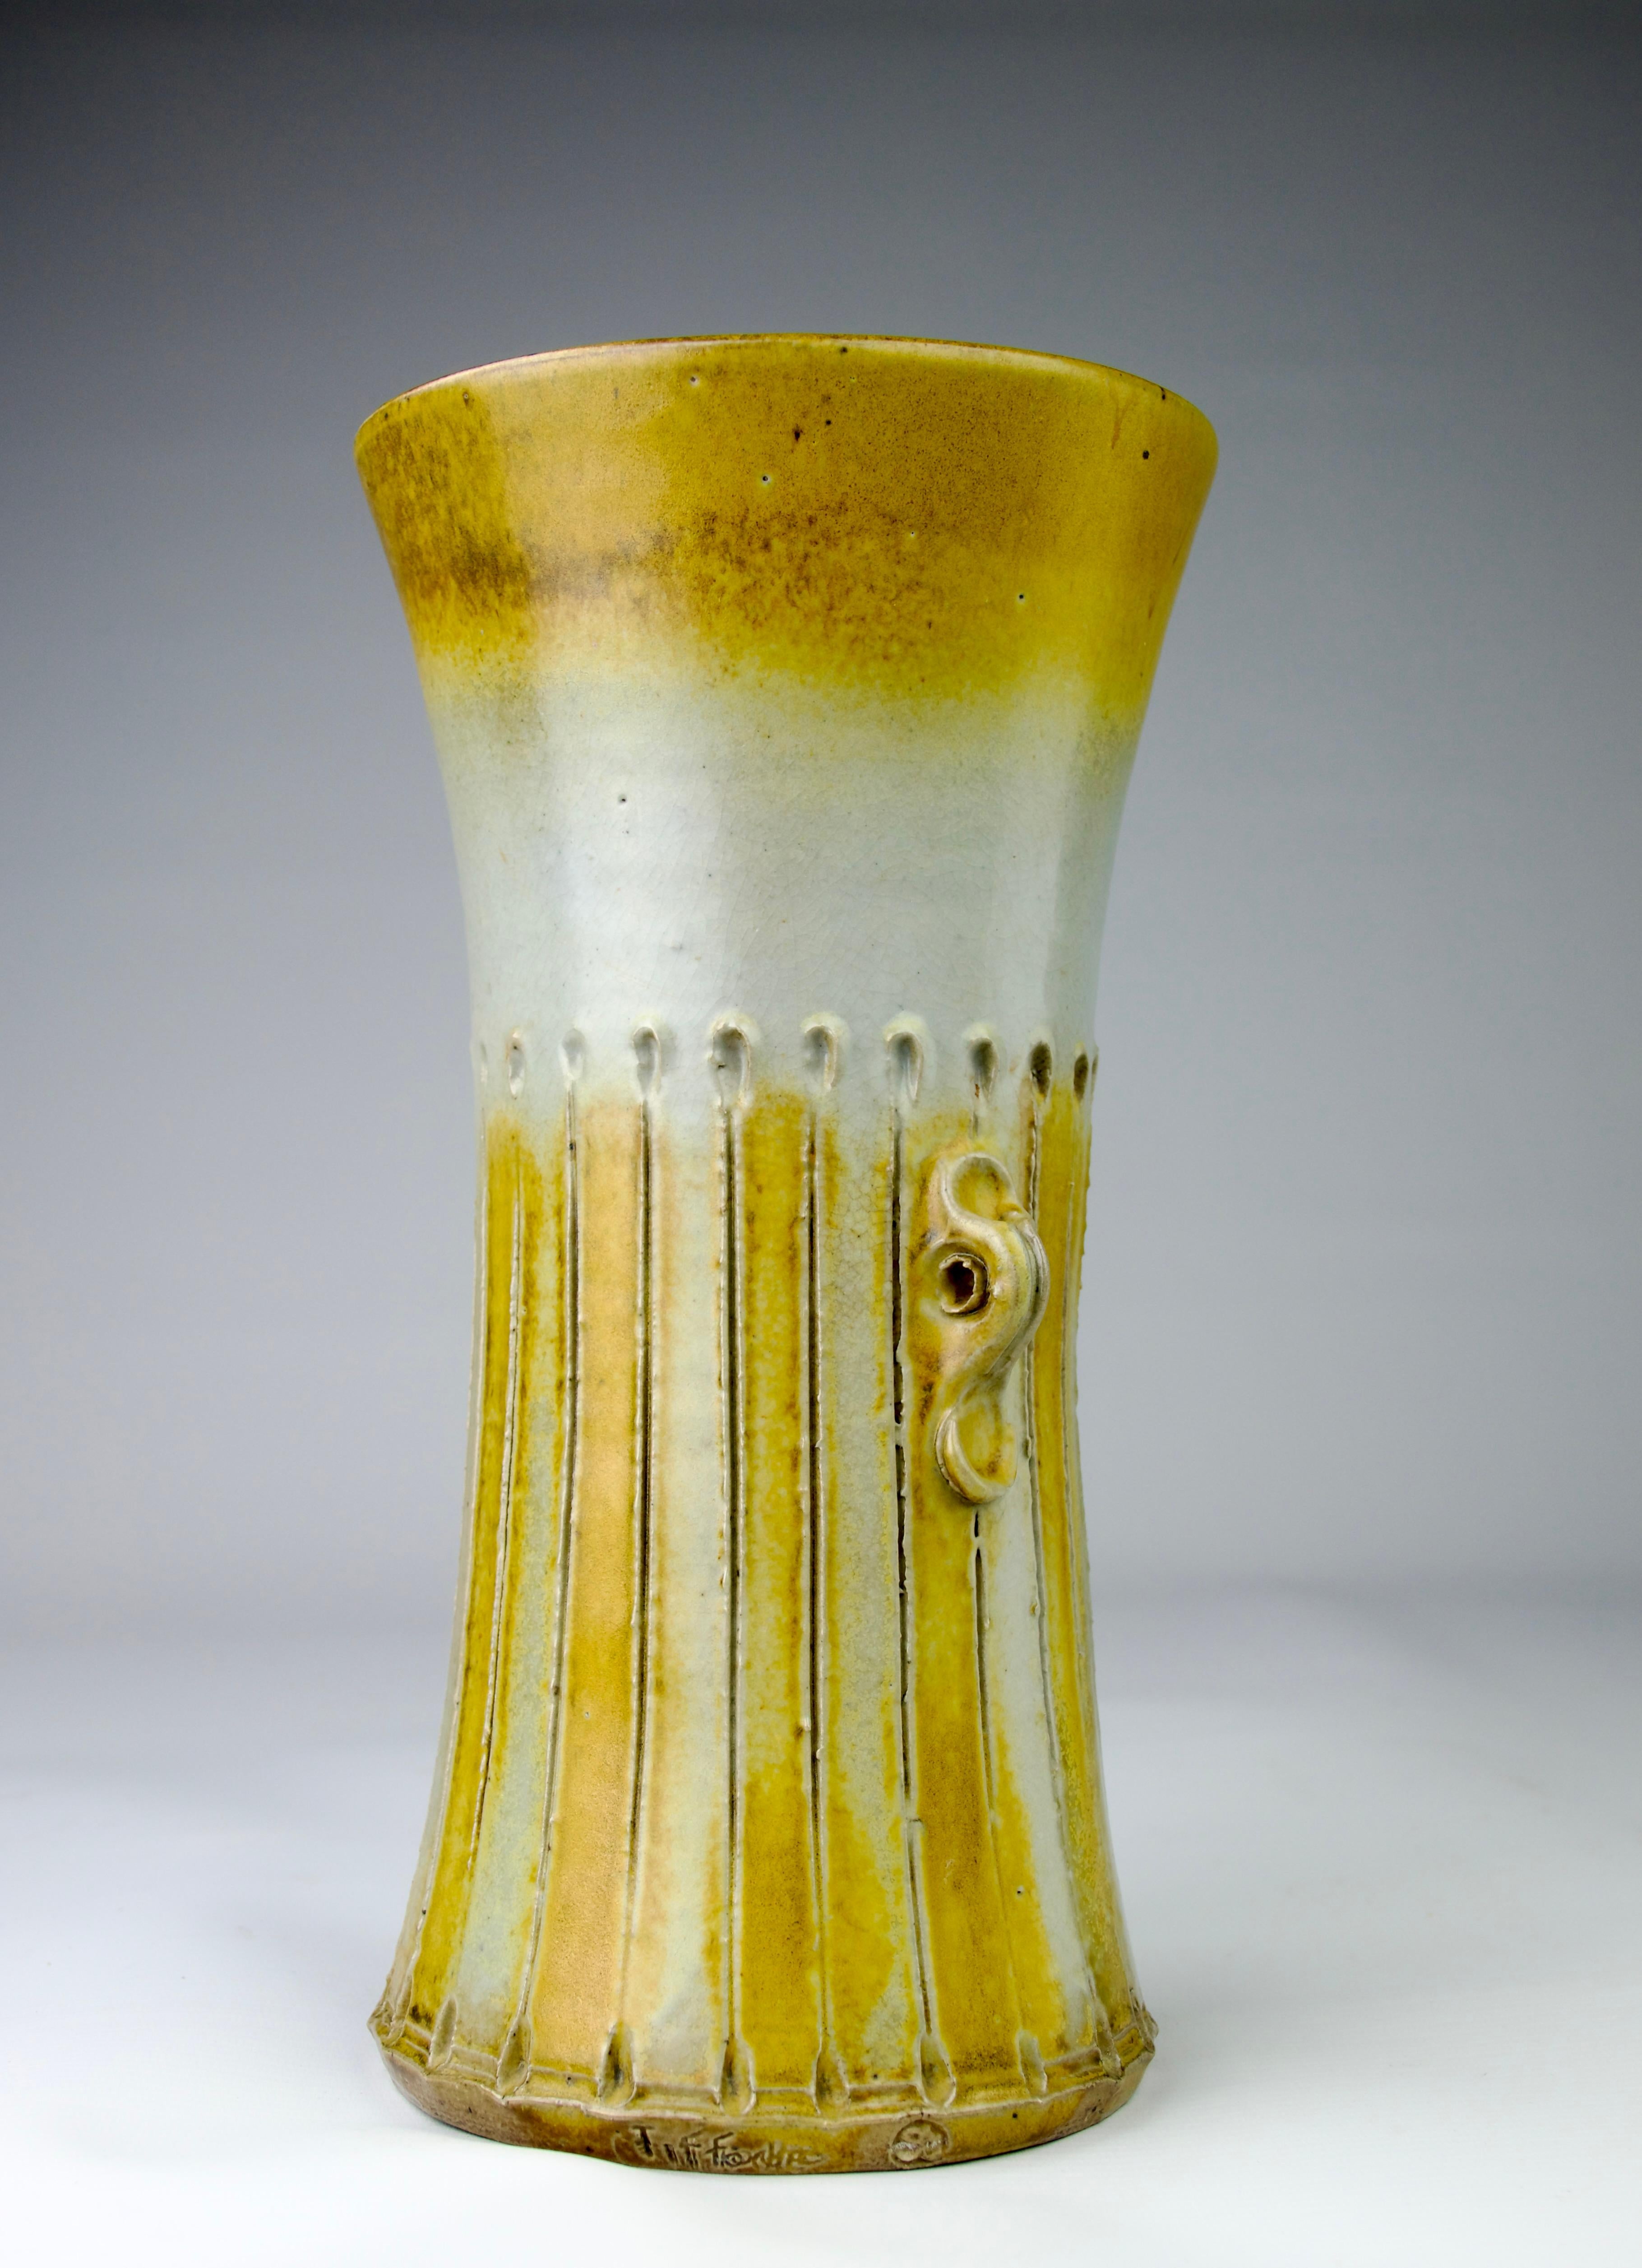 Superbe vase long en grès céramique Gustave Tiffoche. Les décorations striées et les petites poignées sur le côté sont ponctuées de teintes colorées de jaune, de brun et de blanc.

Dimensions en cm (H x P) :  29.2 x 14

En parfait état.

Expédition